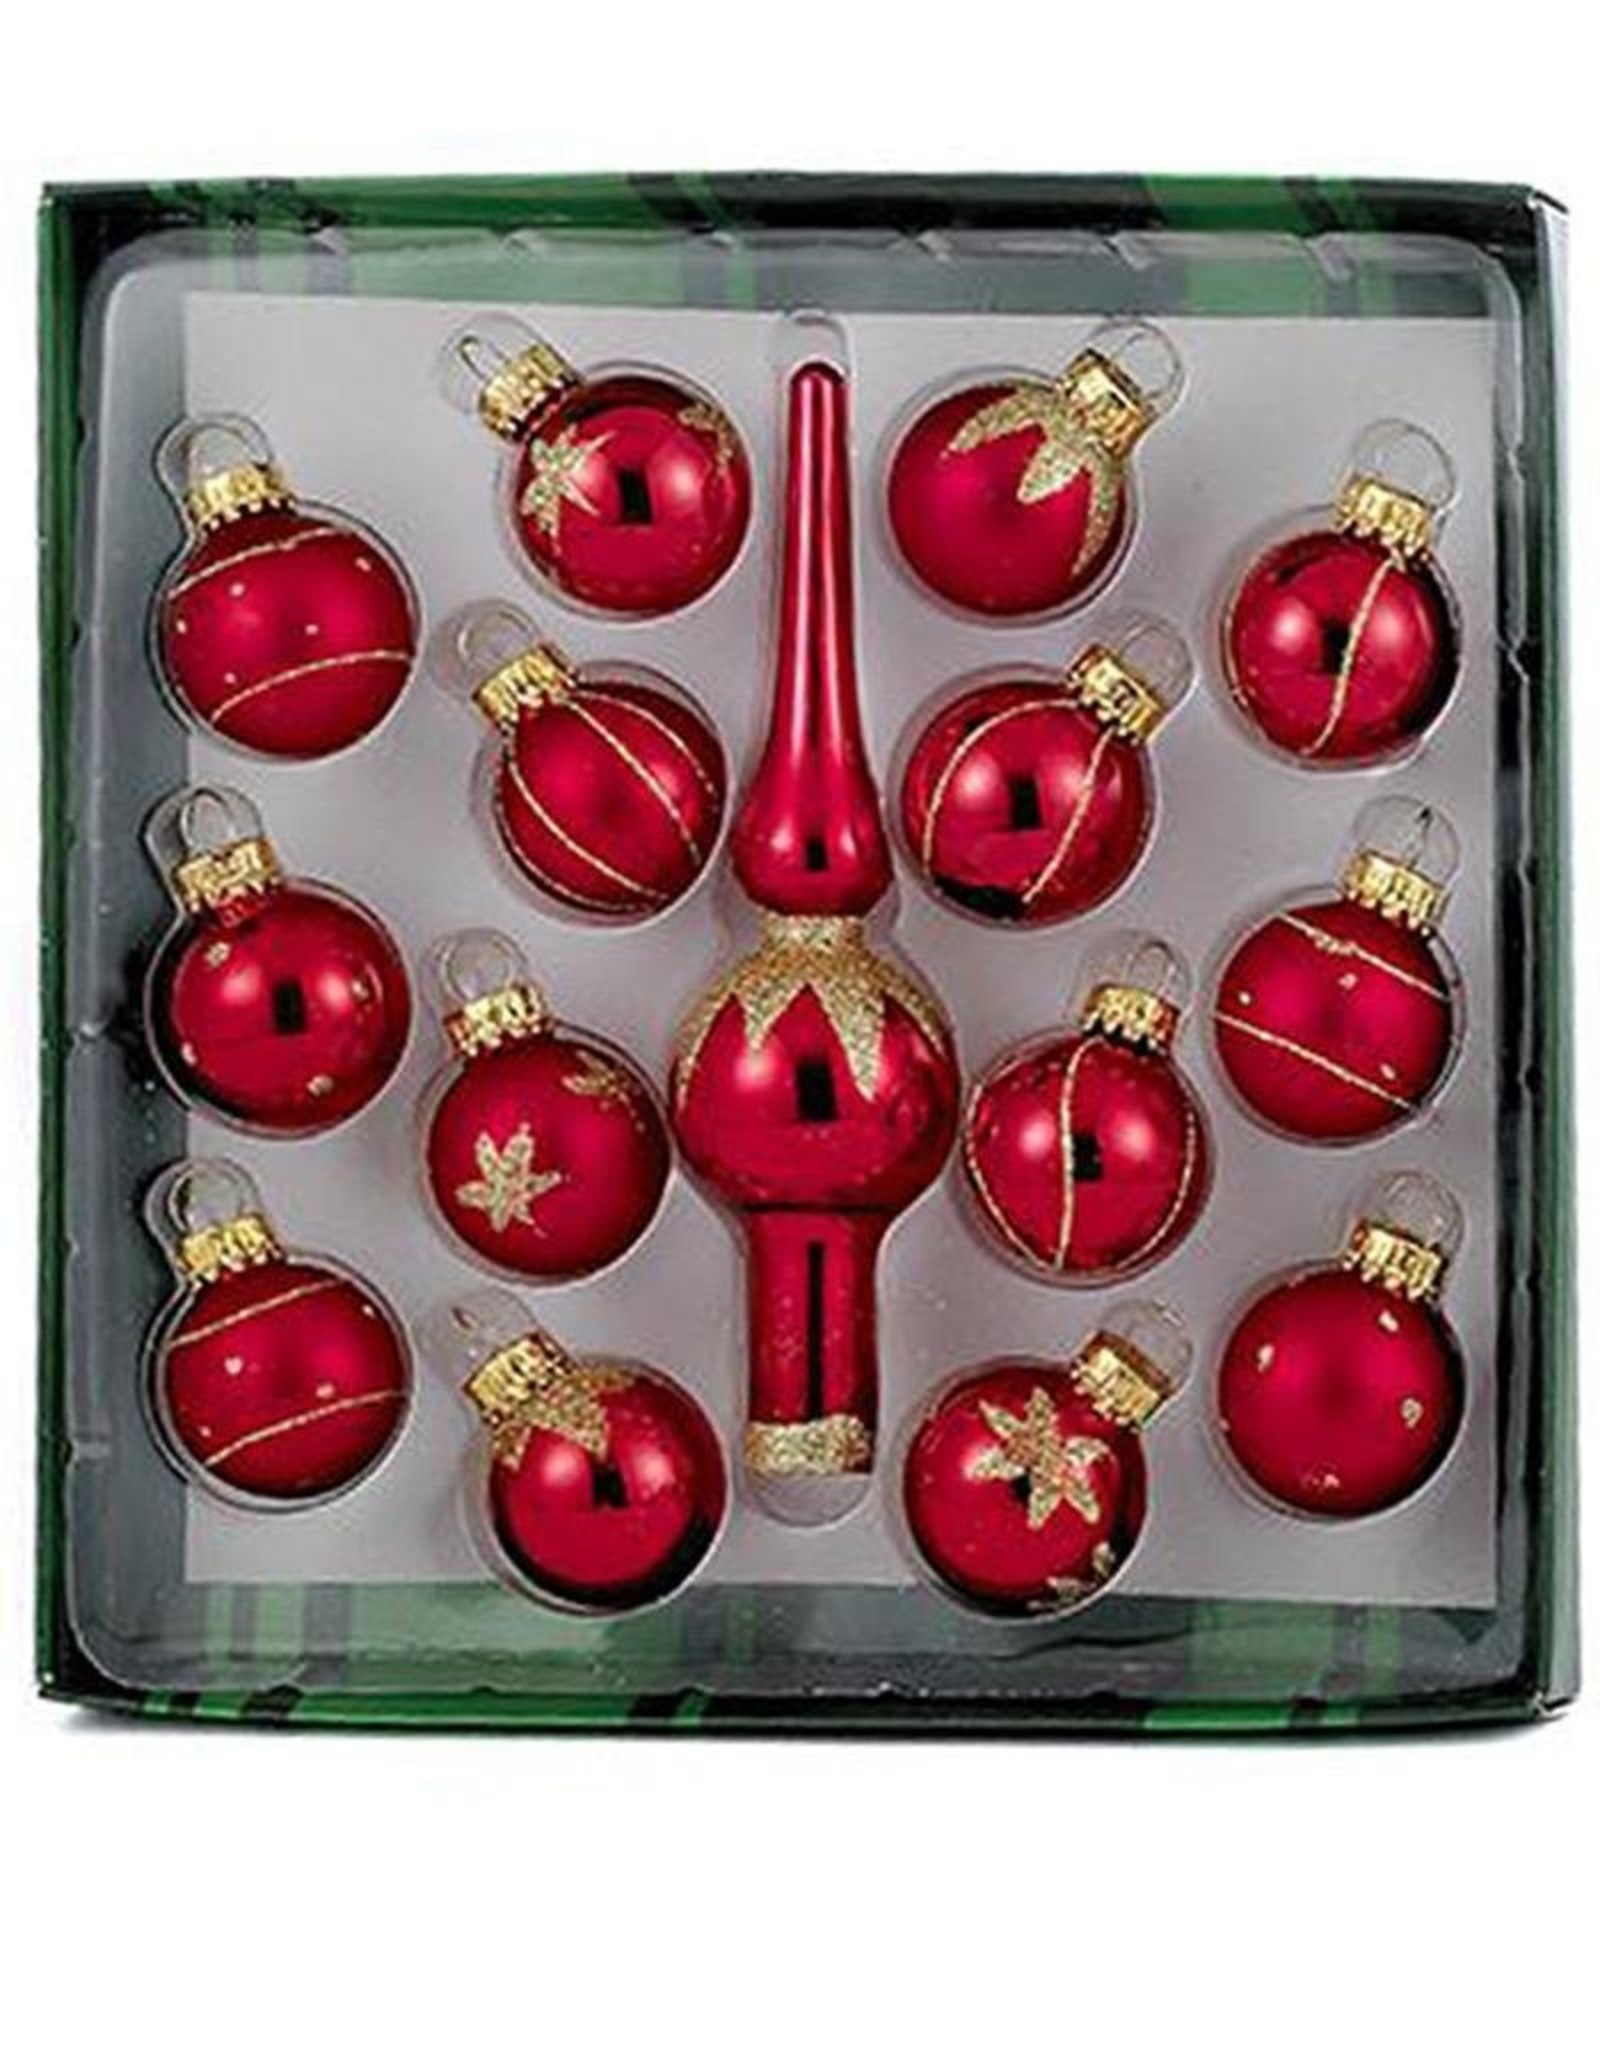 Kurt Adler Red Miniature Glass Ball Ornaments W Tree Topper 15pc Set 35MM